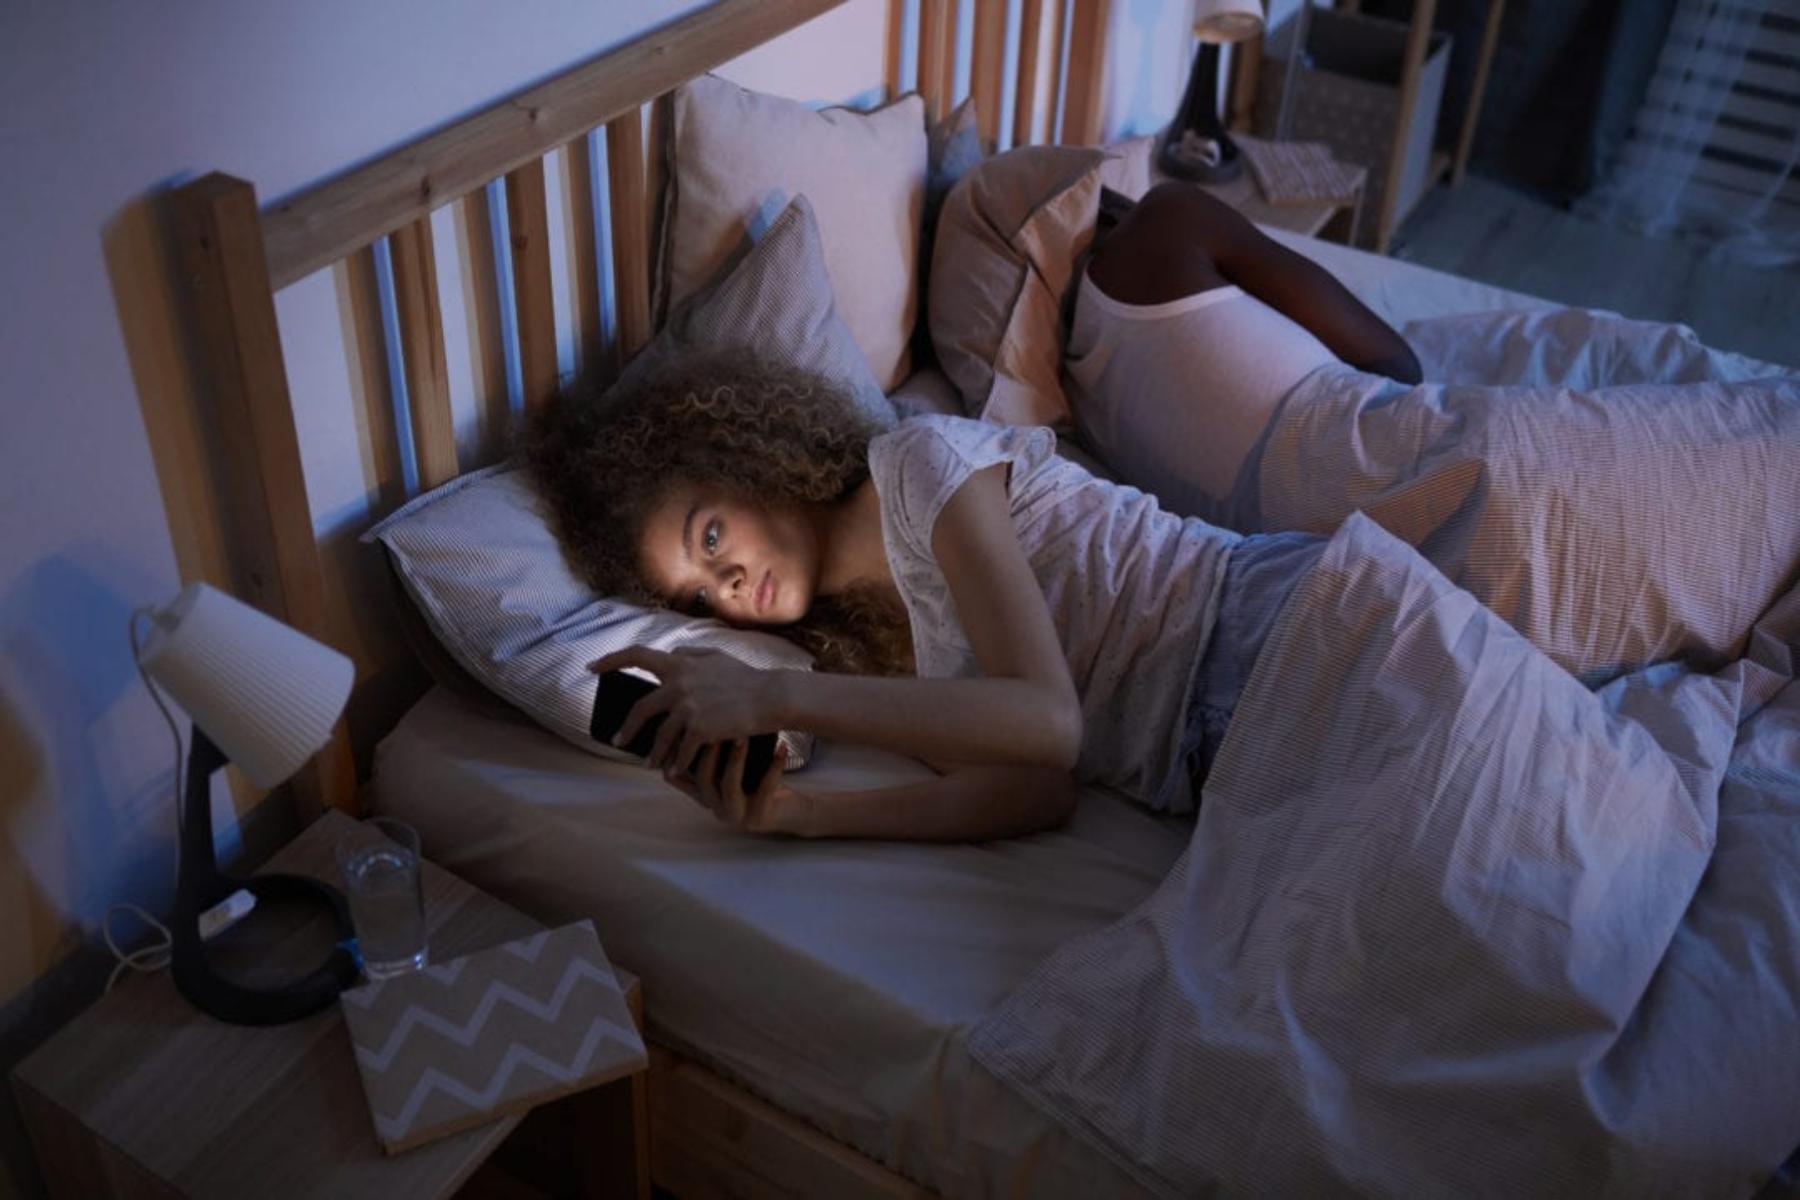 Νευροεπιστήμη ύπνος: Ο ίδιος μηχανισμός σε διαταραχές ύπνου και ψυχικές διαταραχές